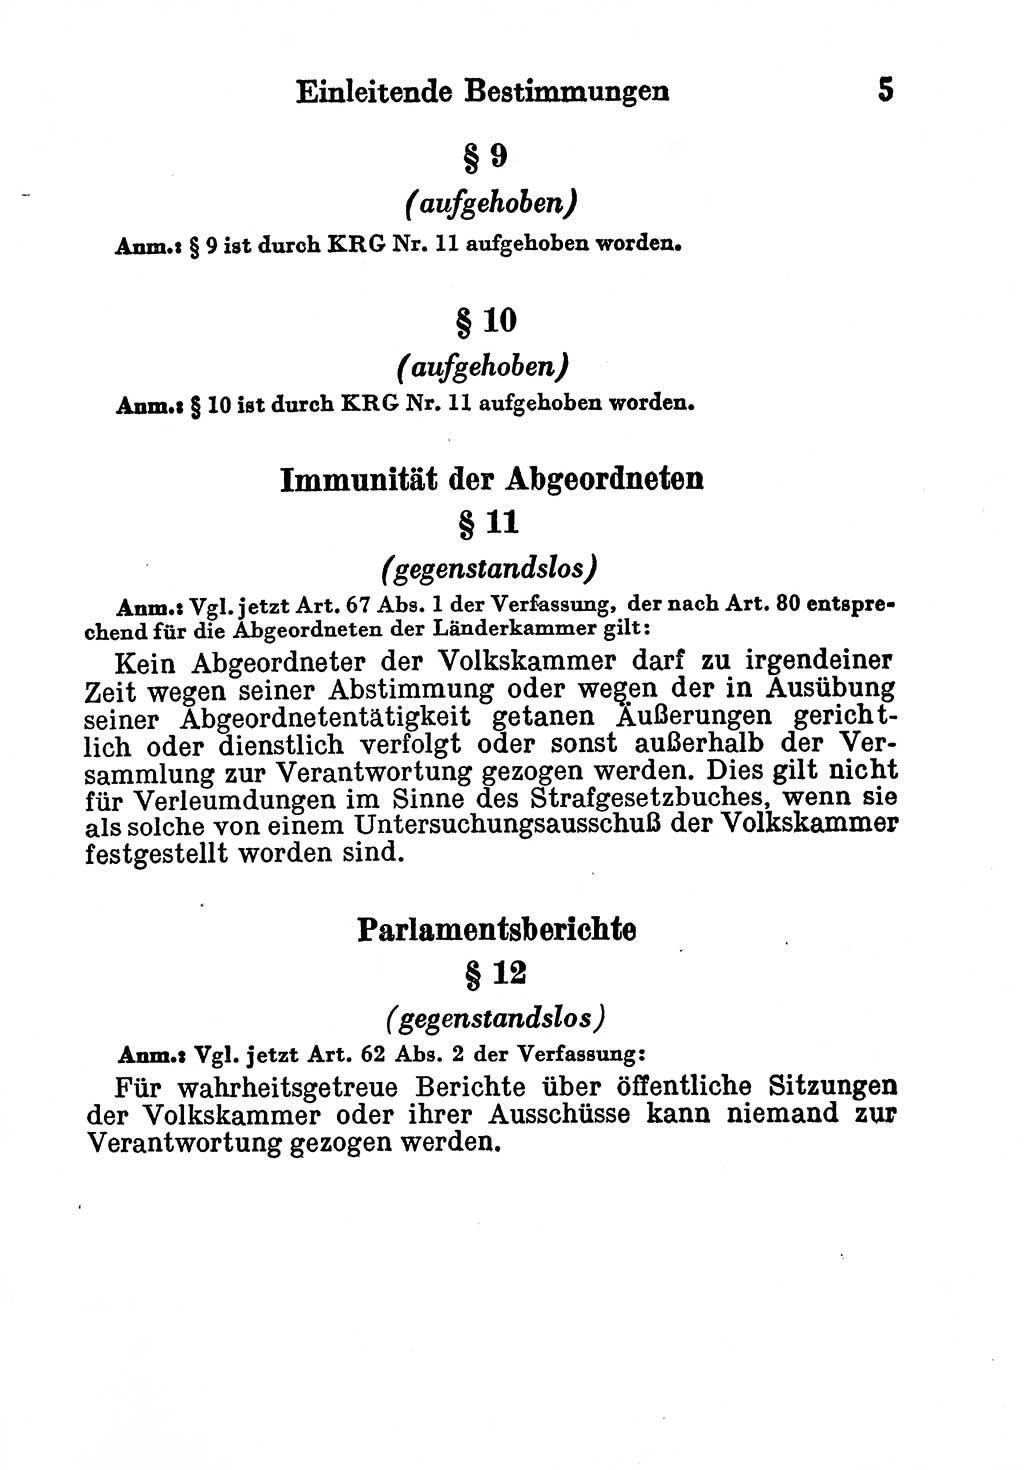 Strafgesetzbuch (StGB) und andere Strafgesetze [Deutsche Demokratische Republik (DDR)] 1956, Seite 5 (StGB Strafges. DDR 1956, S. 5)